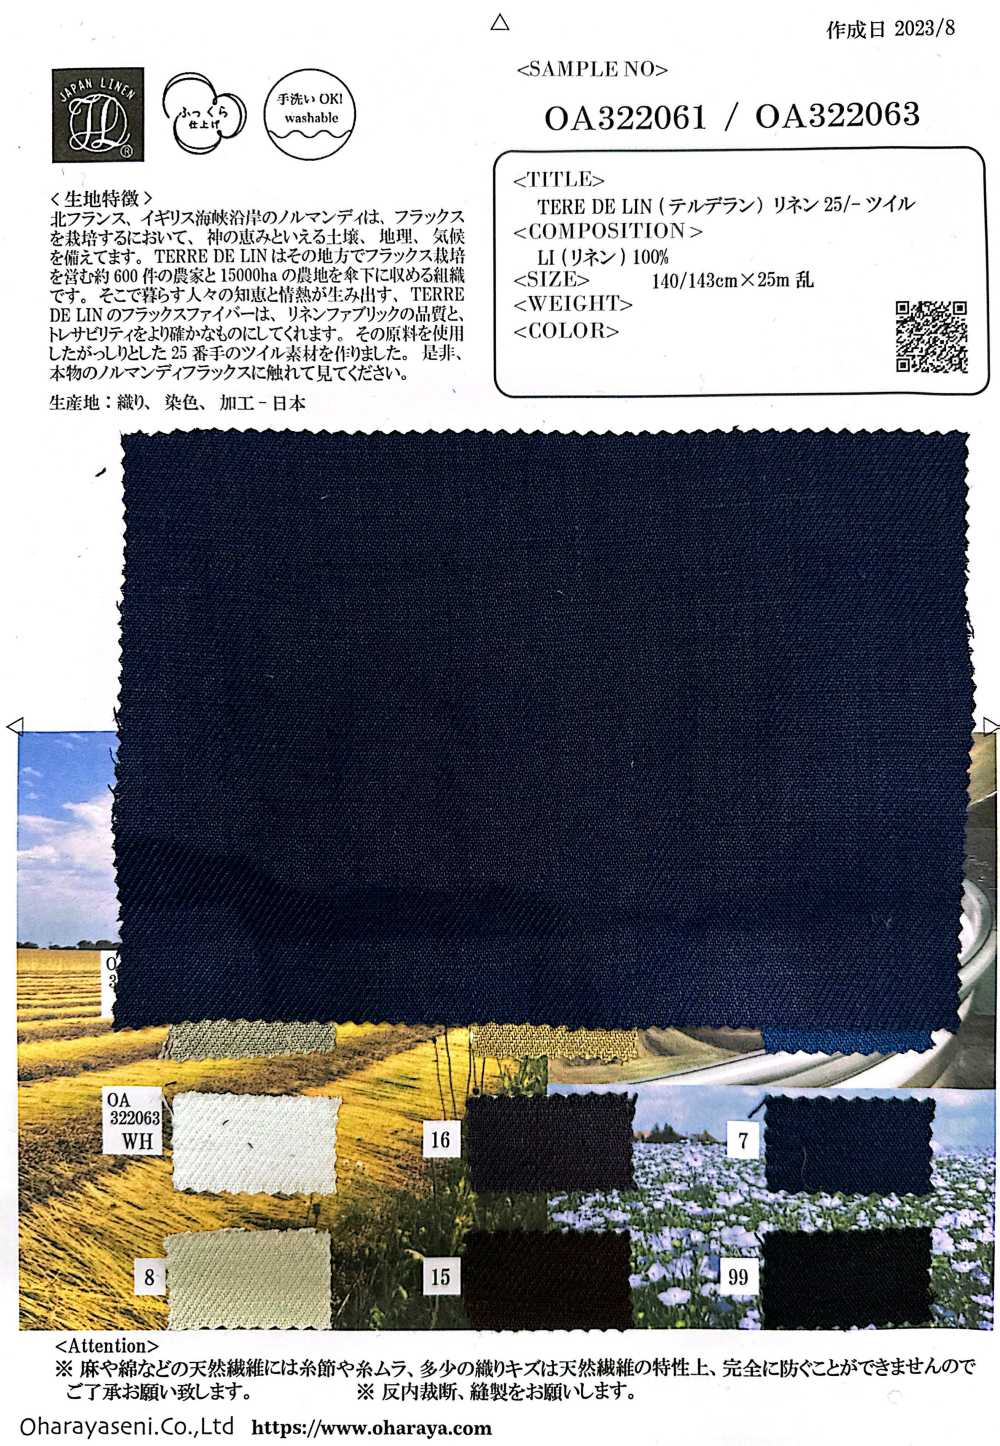 OA322061 TERE DE LIN Lino 25/-Sarga[Fabrica Textil] Oharayaseni